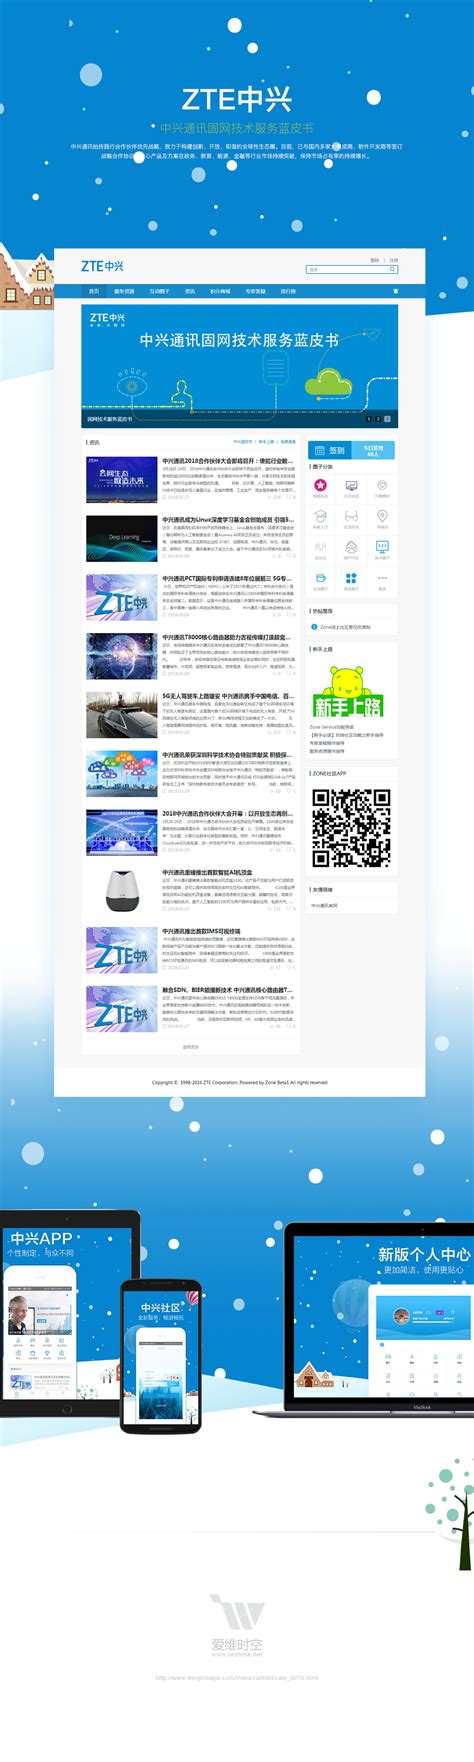 兴庆区：深化改革聚焦重点 打造一流营商环境-宁夏新闻网